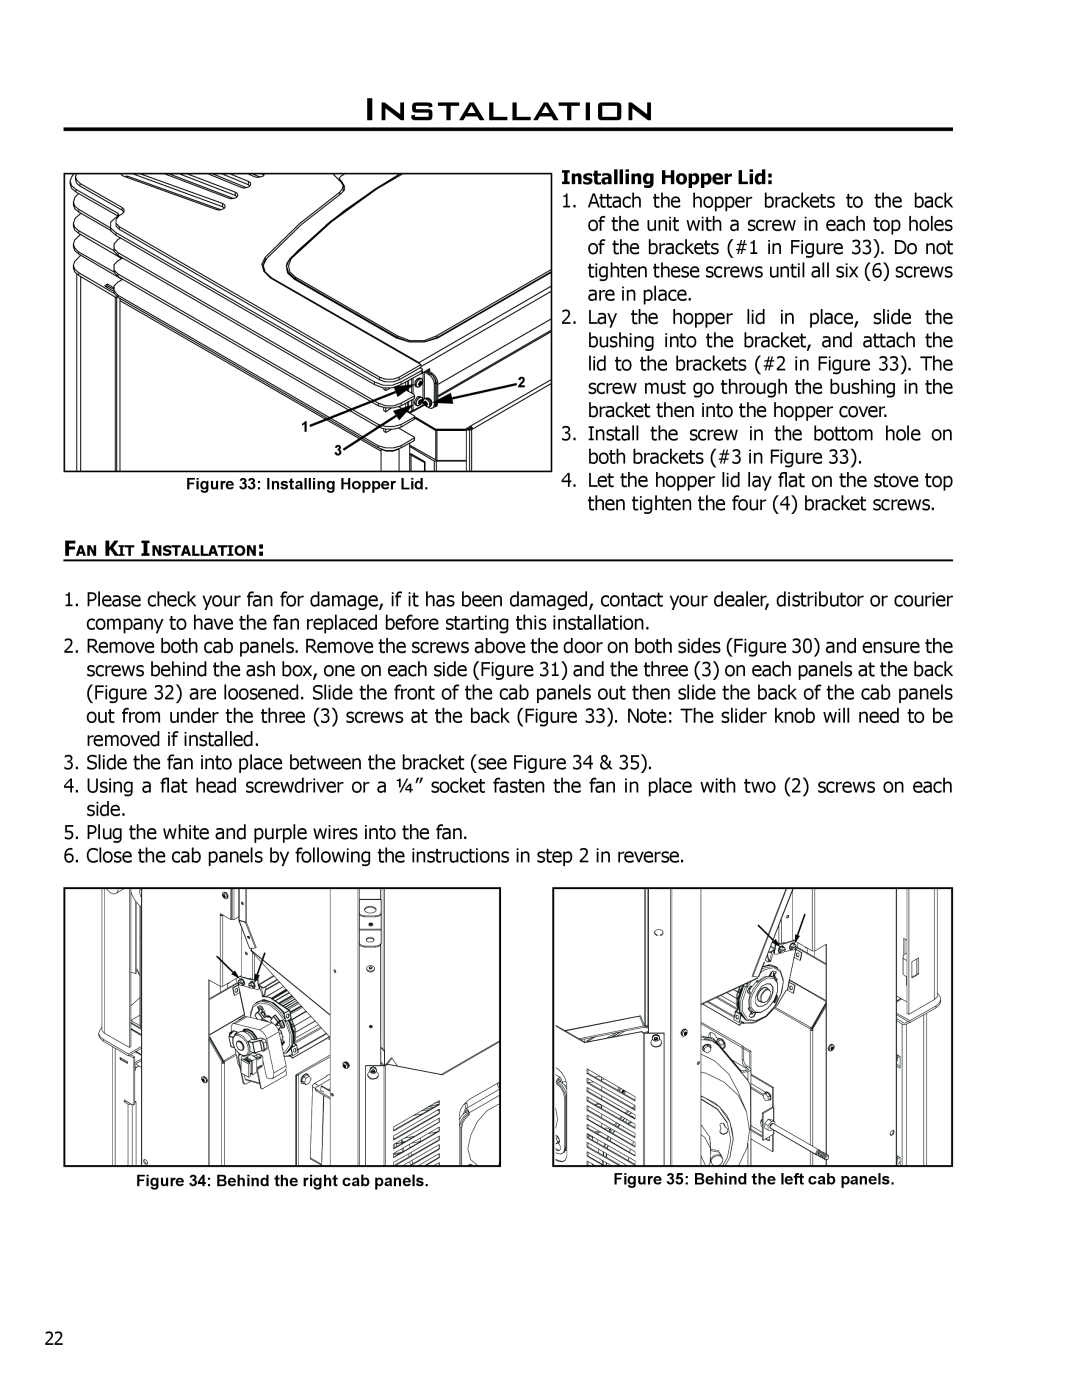 Enviro C-11150 technical manual Installation, Installing Hopper Lid 